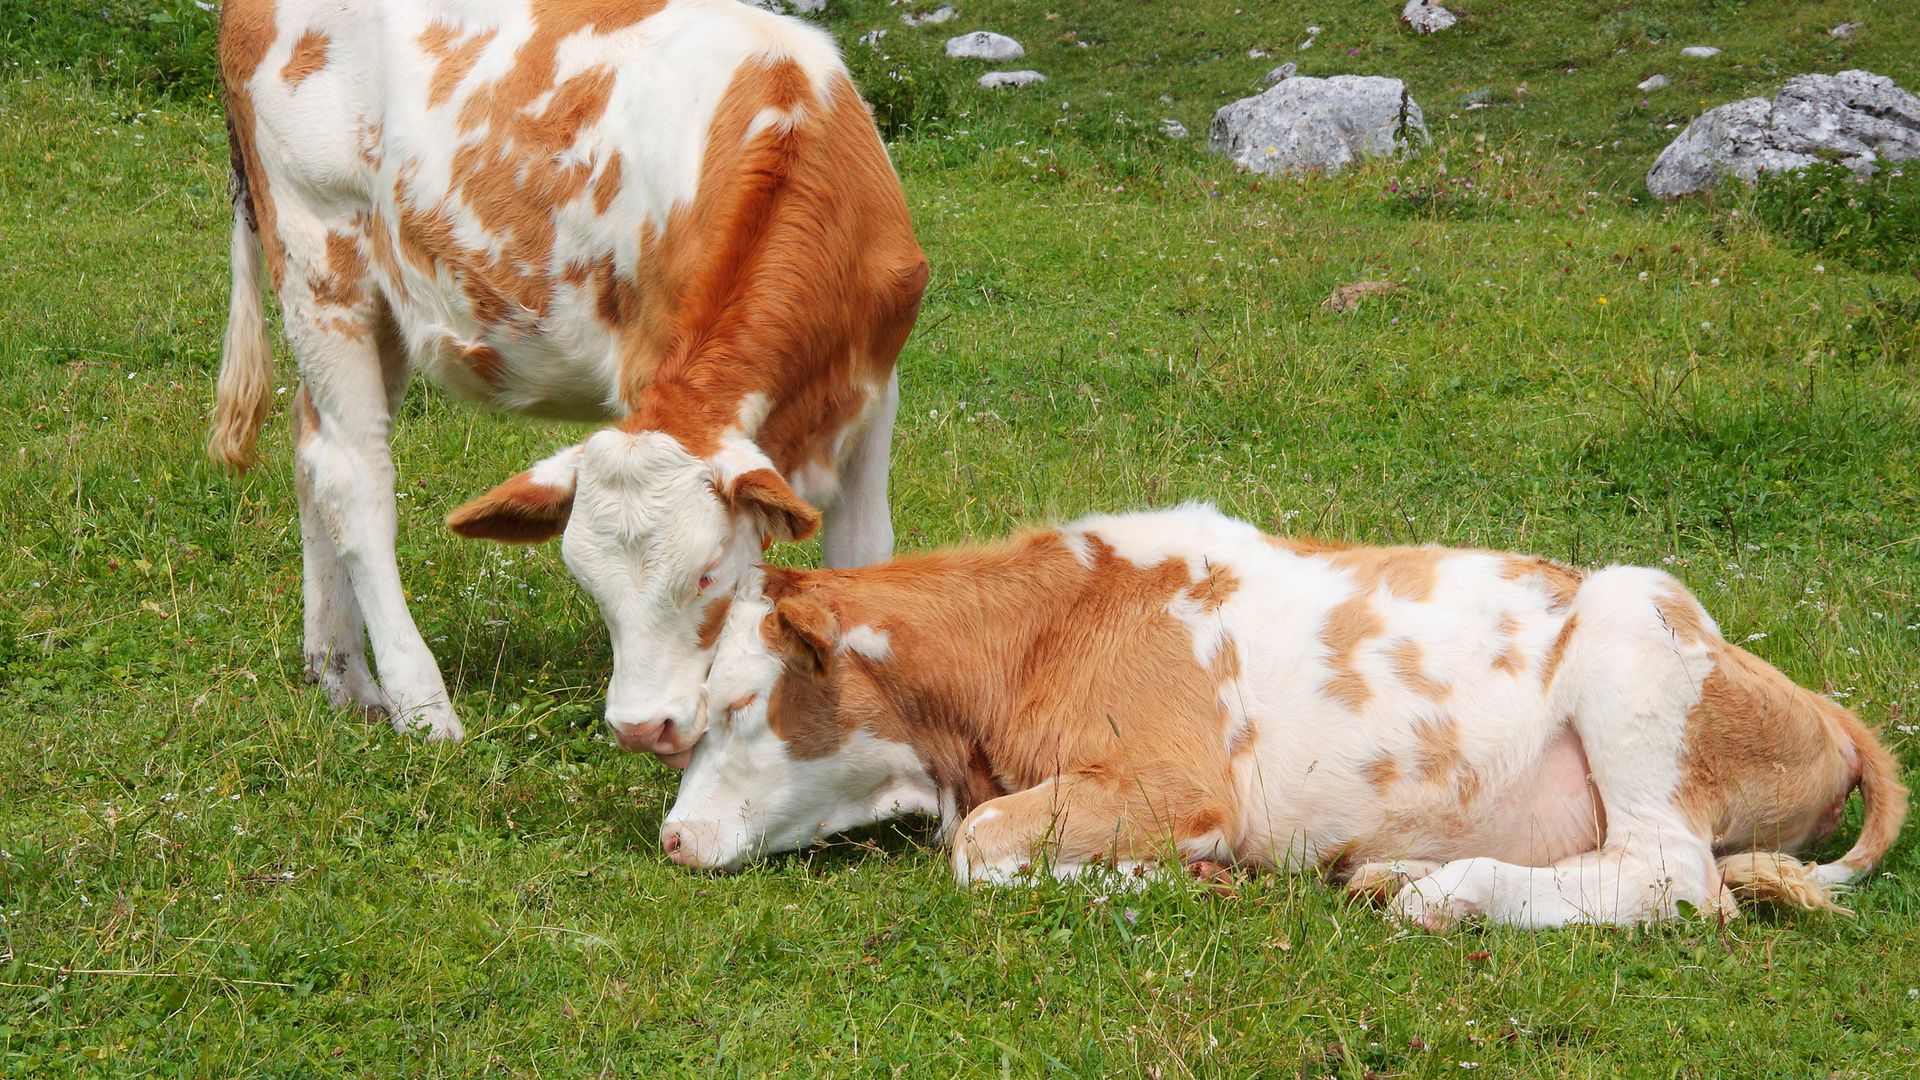 ekološko meso i mlijeko ekološki proizvedeno meso ekološki proizvedeno mlijeko ekološki uzgoj